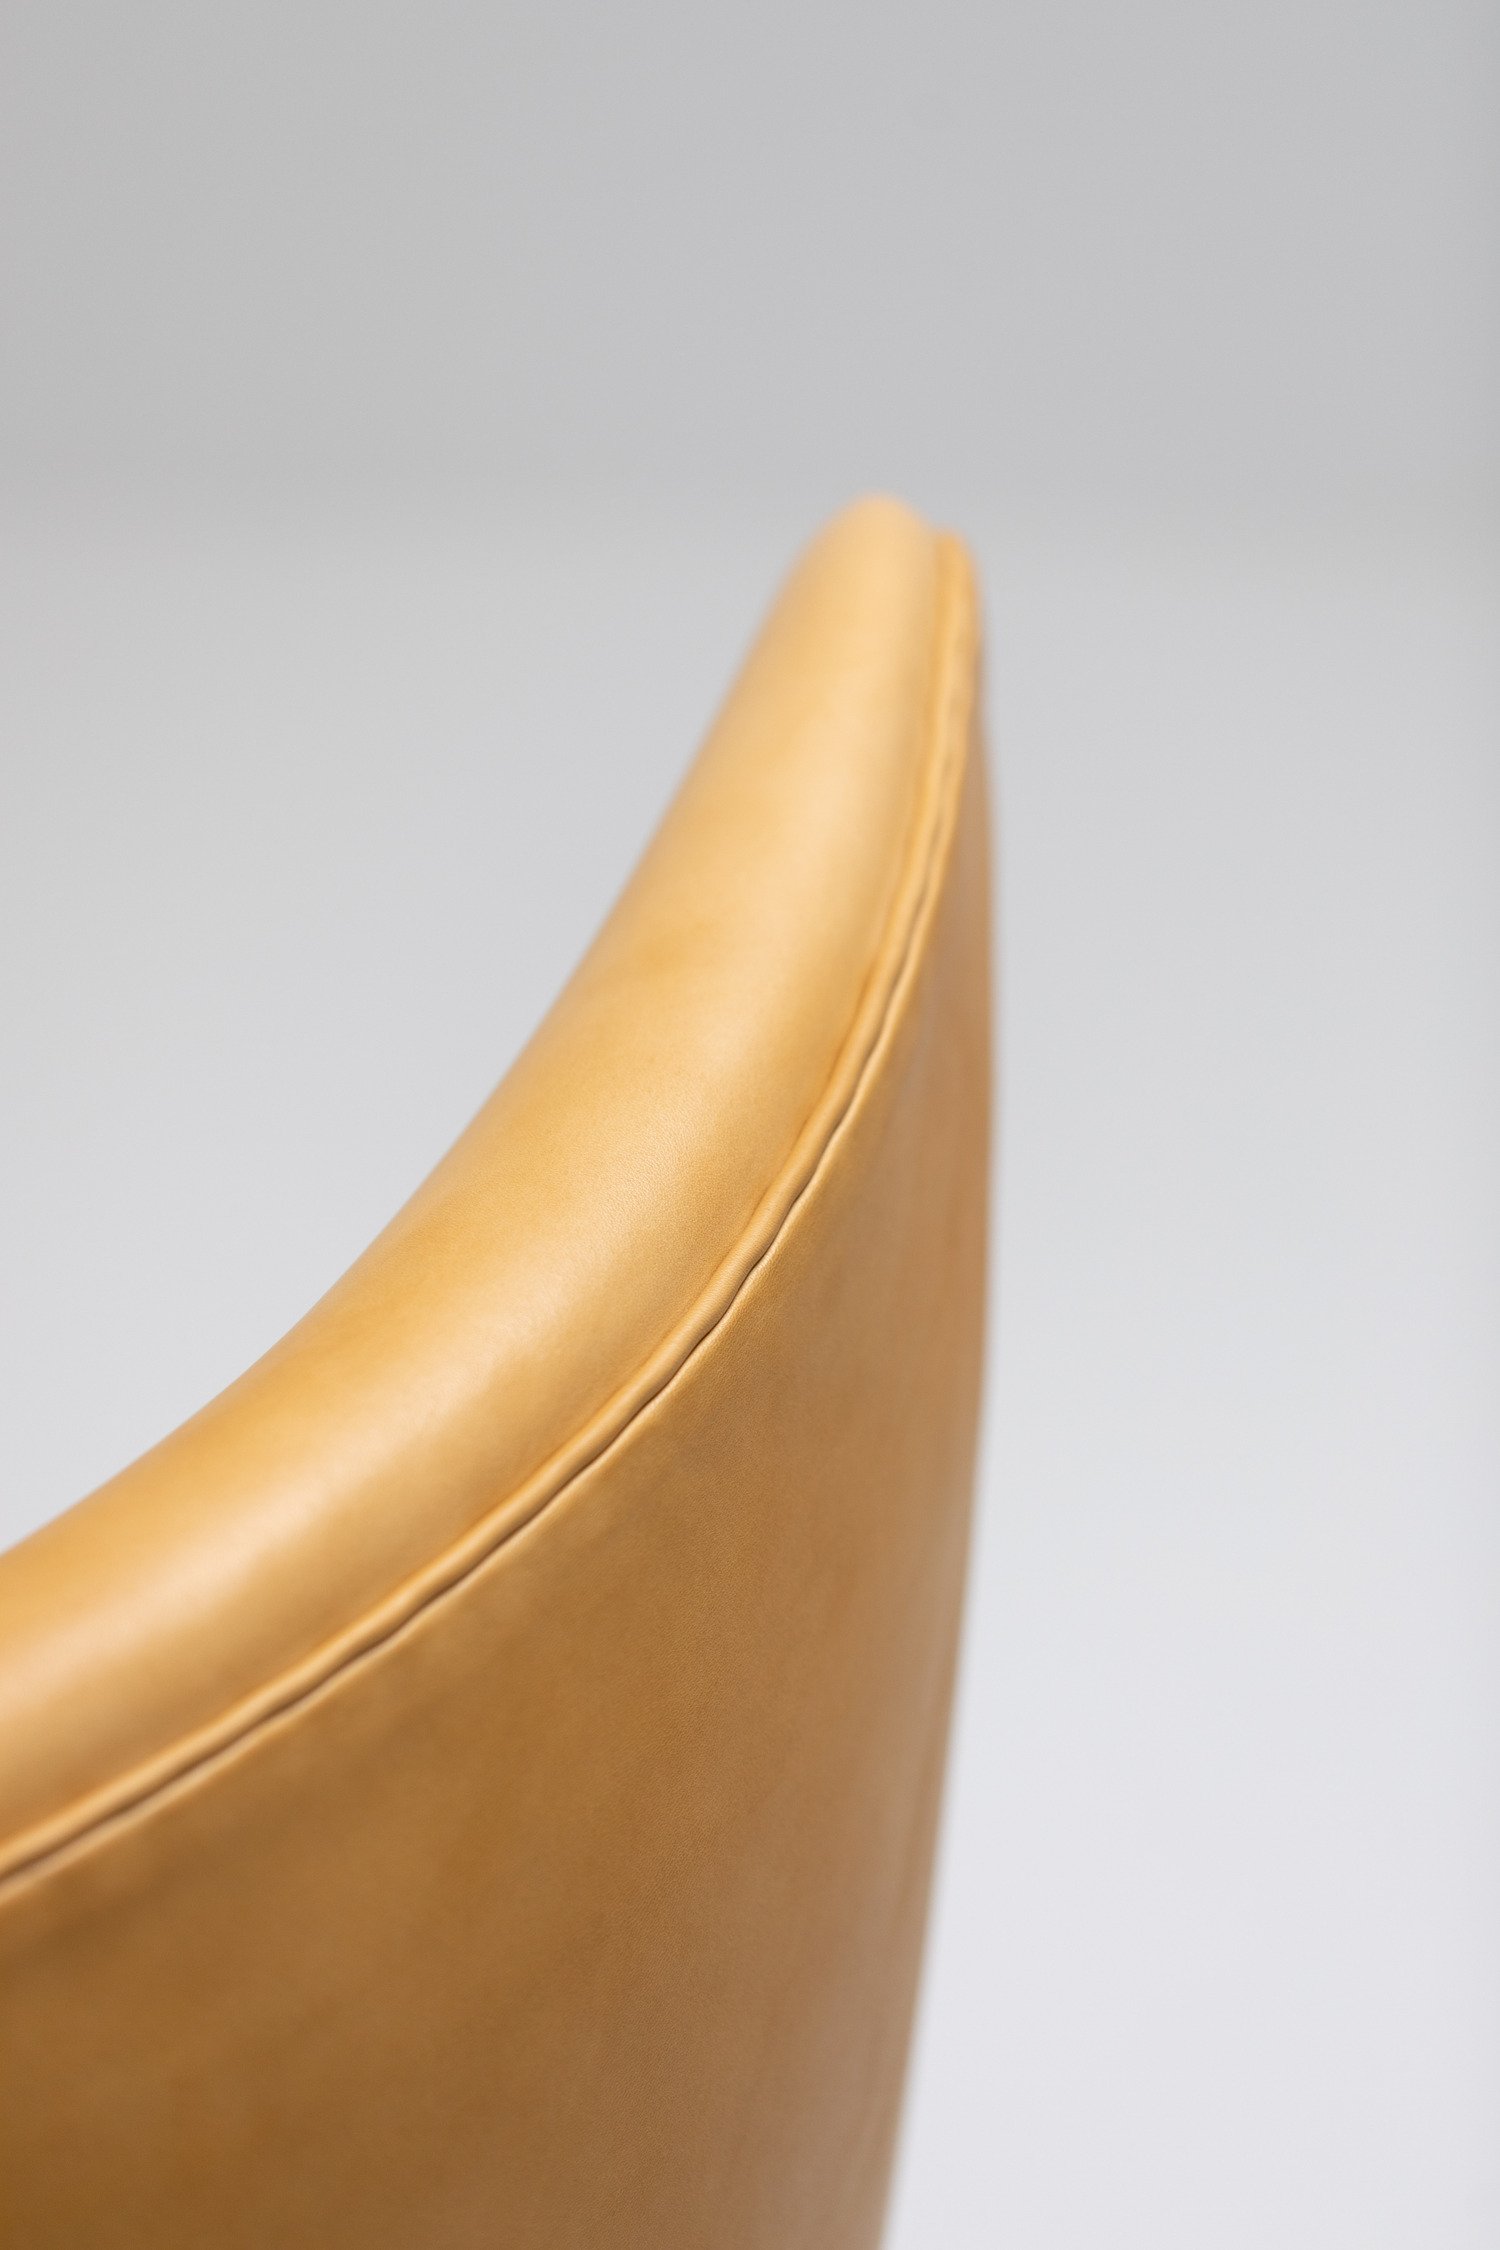 Arne Jacobsen Egg chair